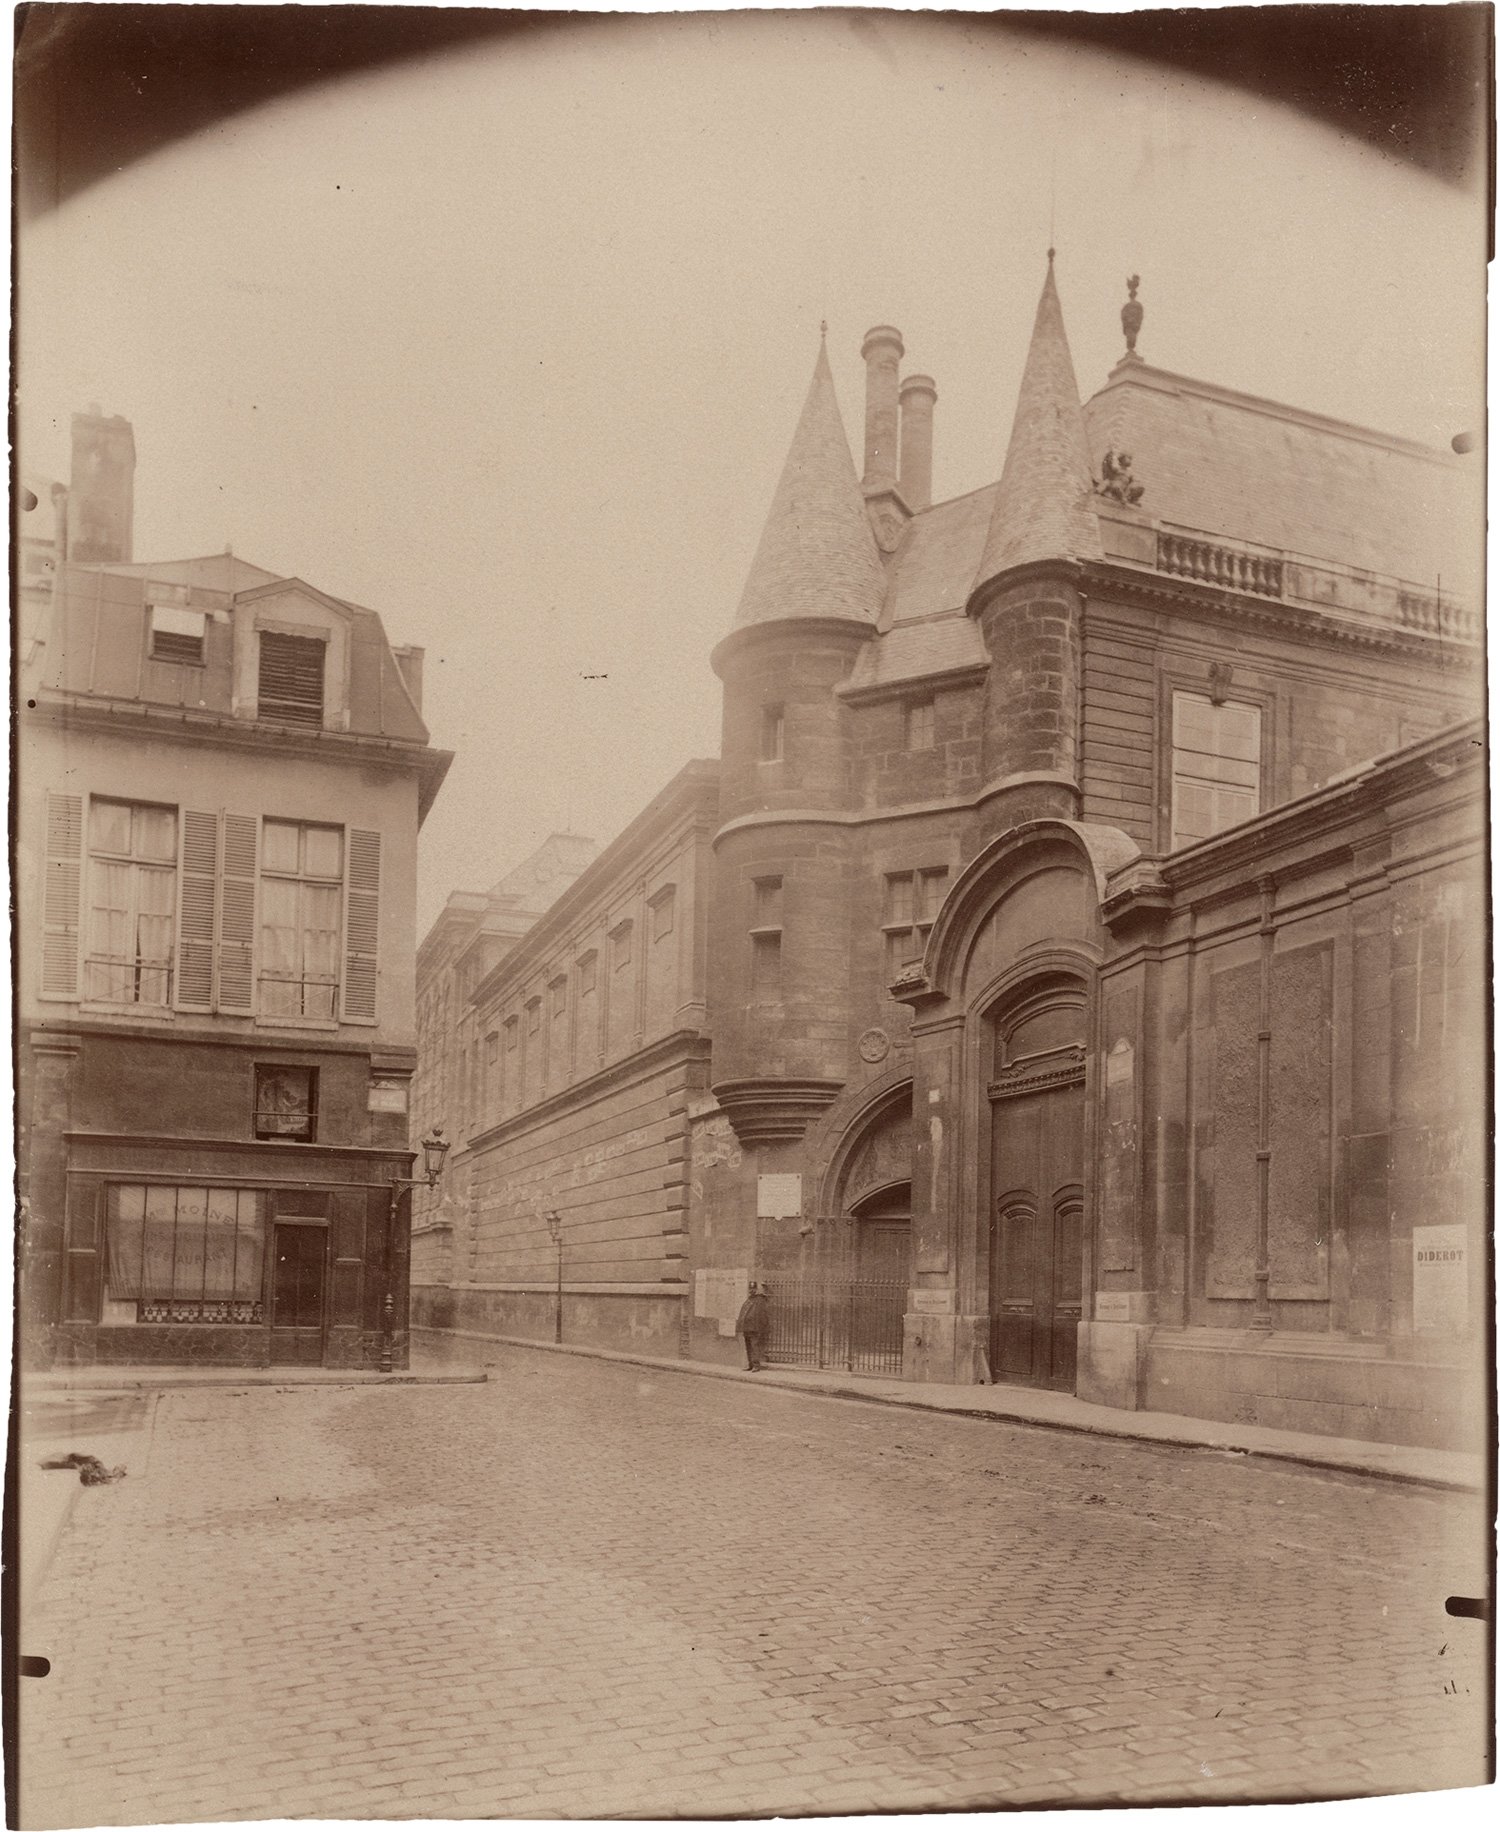 Image of E. Atget: Portail rue du Temple, Paris 3e, ca. 1910